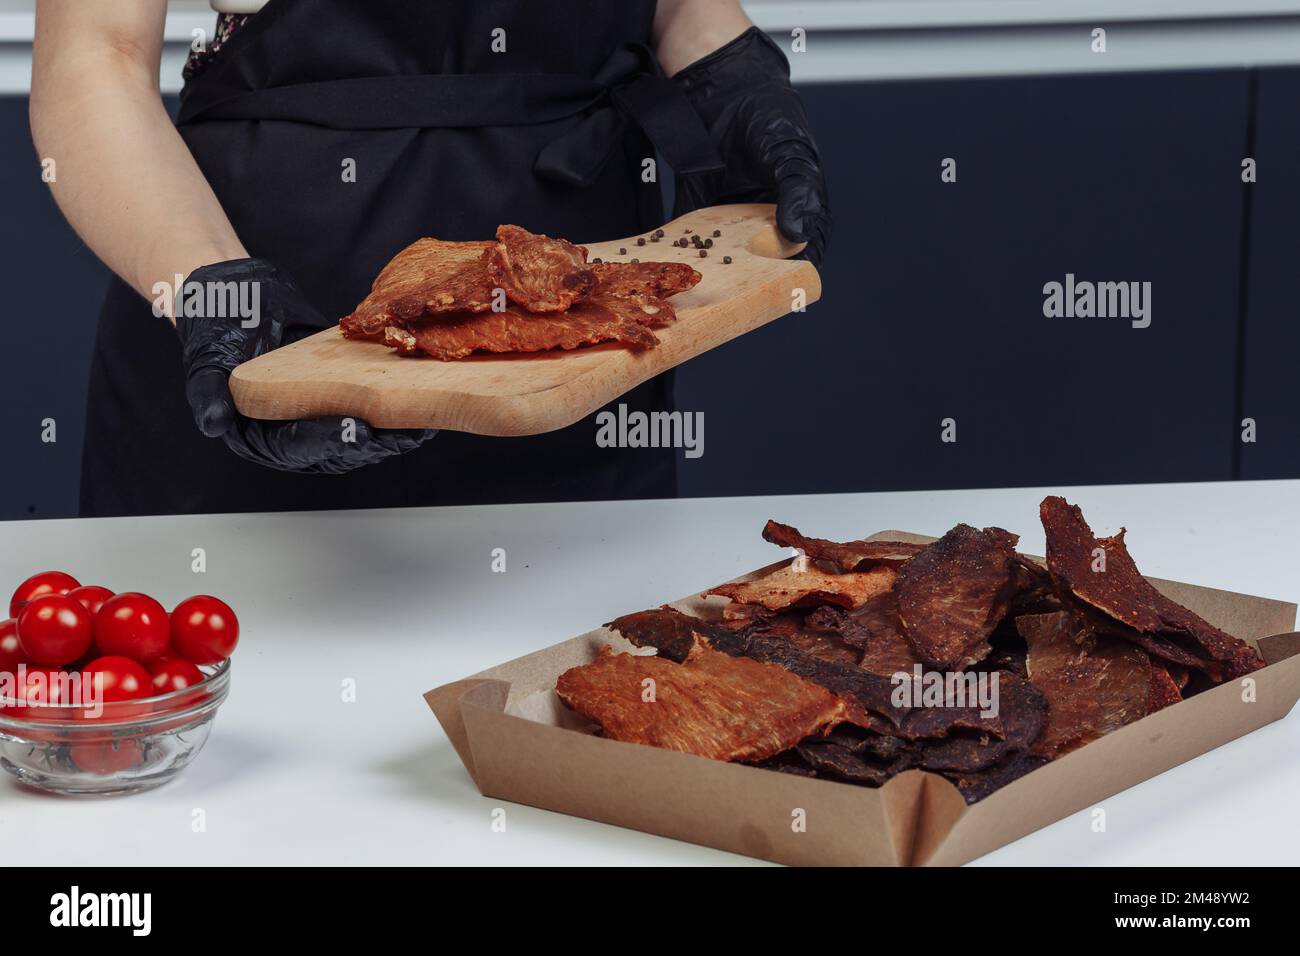 Ein Typ packt getrocknetes Fleisch in Papierkartons mit schwarzen Handschuhen. Hochwertiges Foto Stockfoto